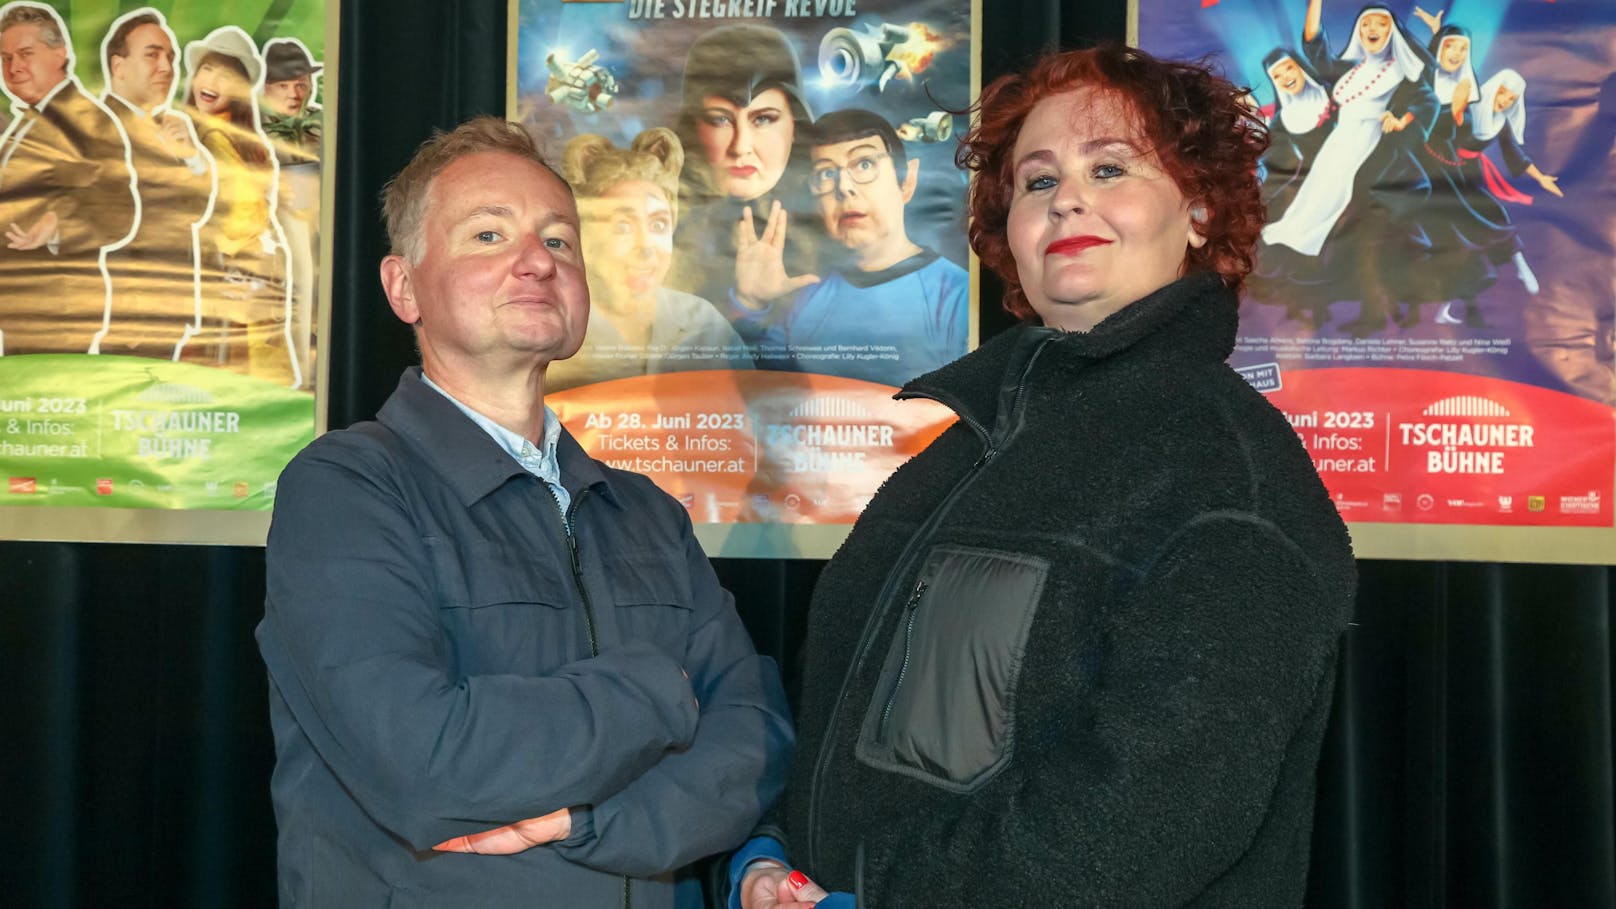 Regisseur und Schauspieler Andy Hallwaxx und Eva Damyanovic bei der Programmpräsentation im legendären Wiener Stegreiftheater "Tschauner", 2023